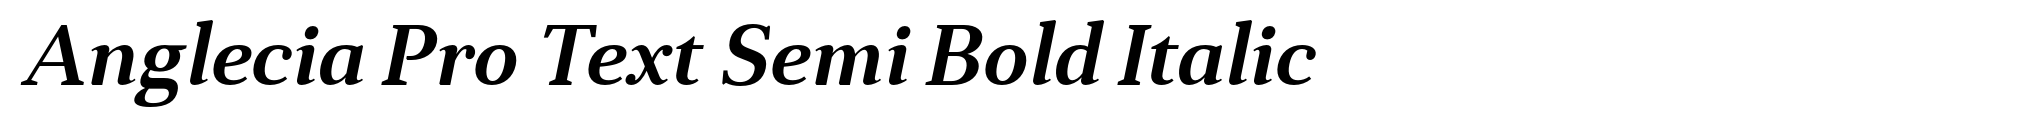 Anglecia Pro Text Semi Bold Italic image